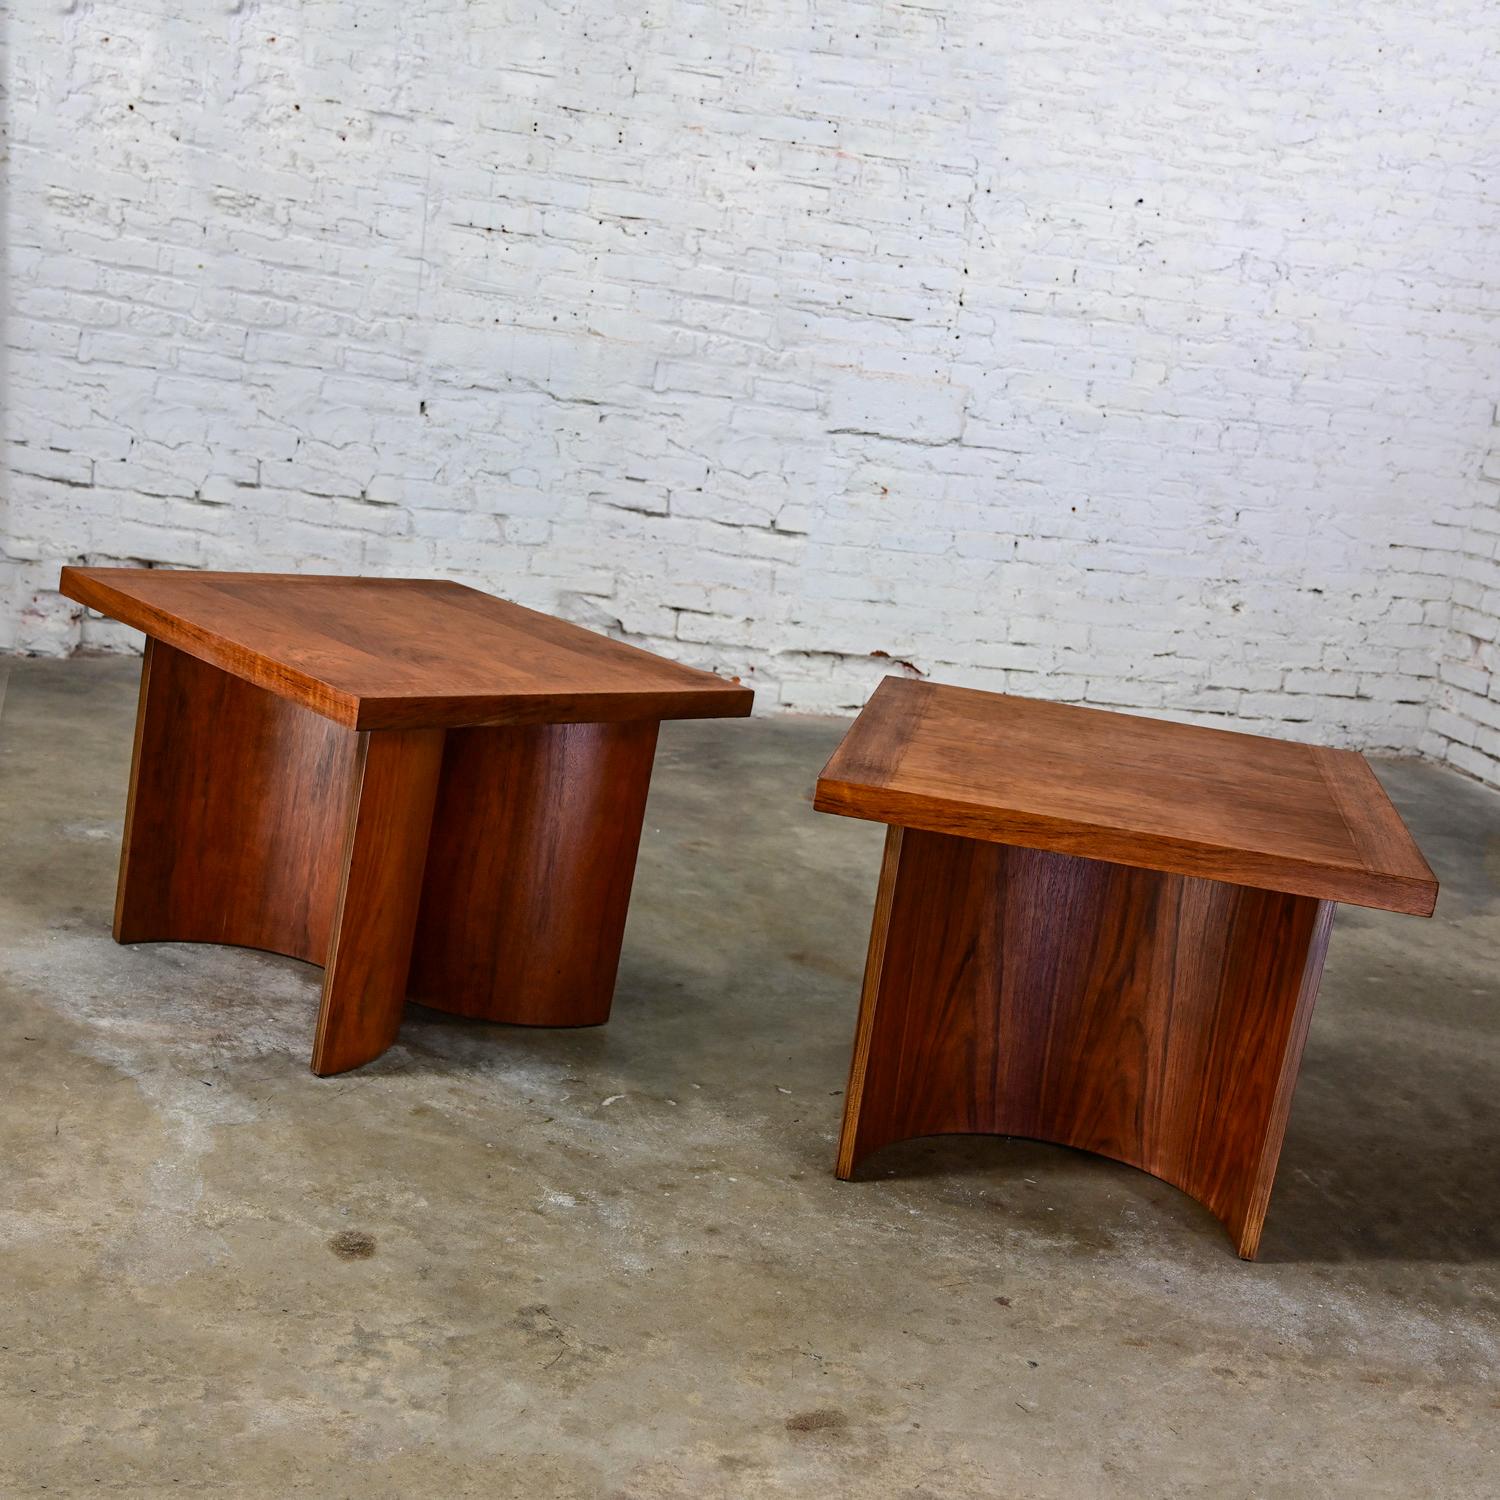 Fabuleuses tables d'appoint vintage Modernes par Kroehler composées de plateaux carrés teintés en noyer et de bases en forme de double U incurvé en bois courbé, une paire. Cette paire est identifiée par des marques et des tampons sur la face